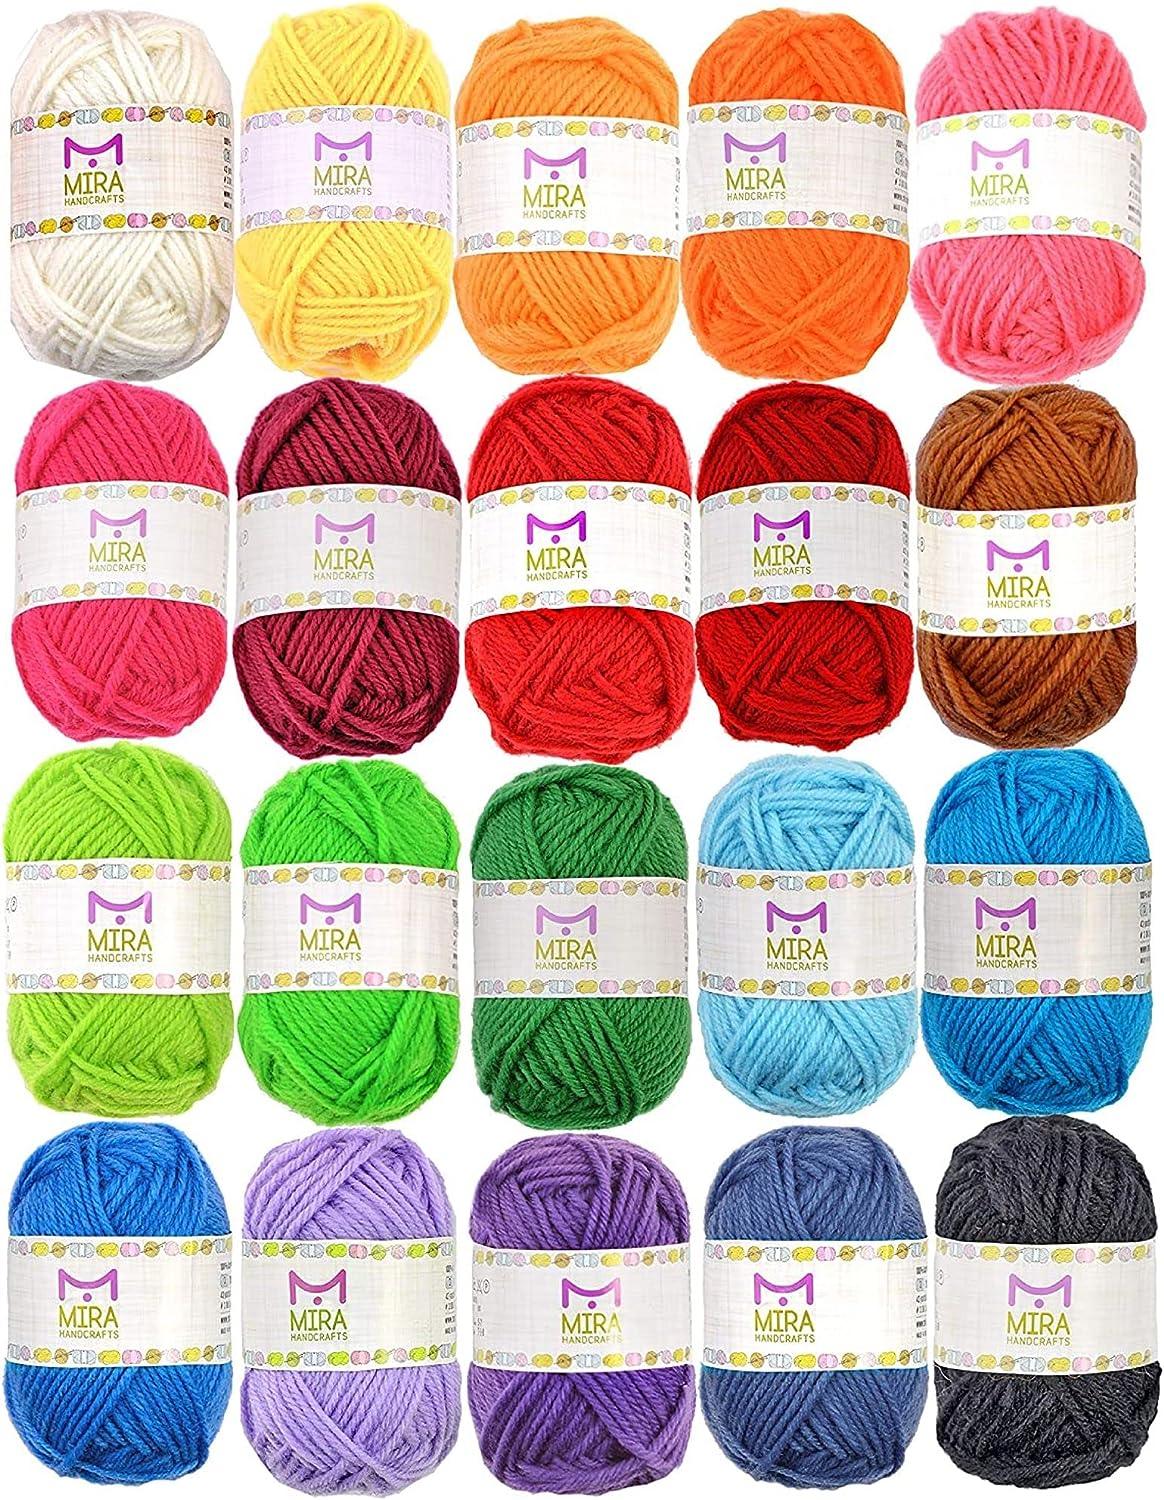 20 Acrylic Yarn Skeins with Crochet Bag-Knitting Bag Yarn Storage Organizer